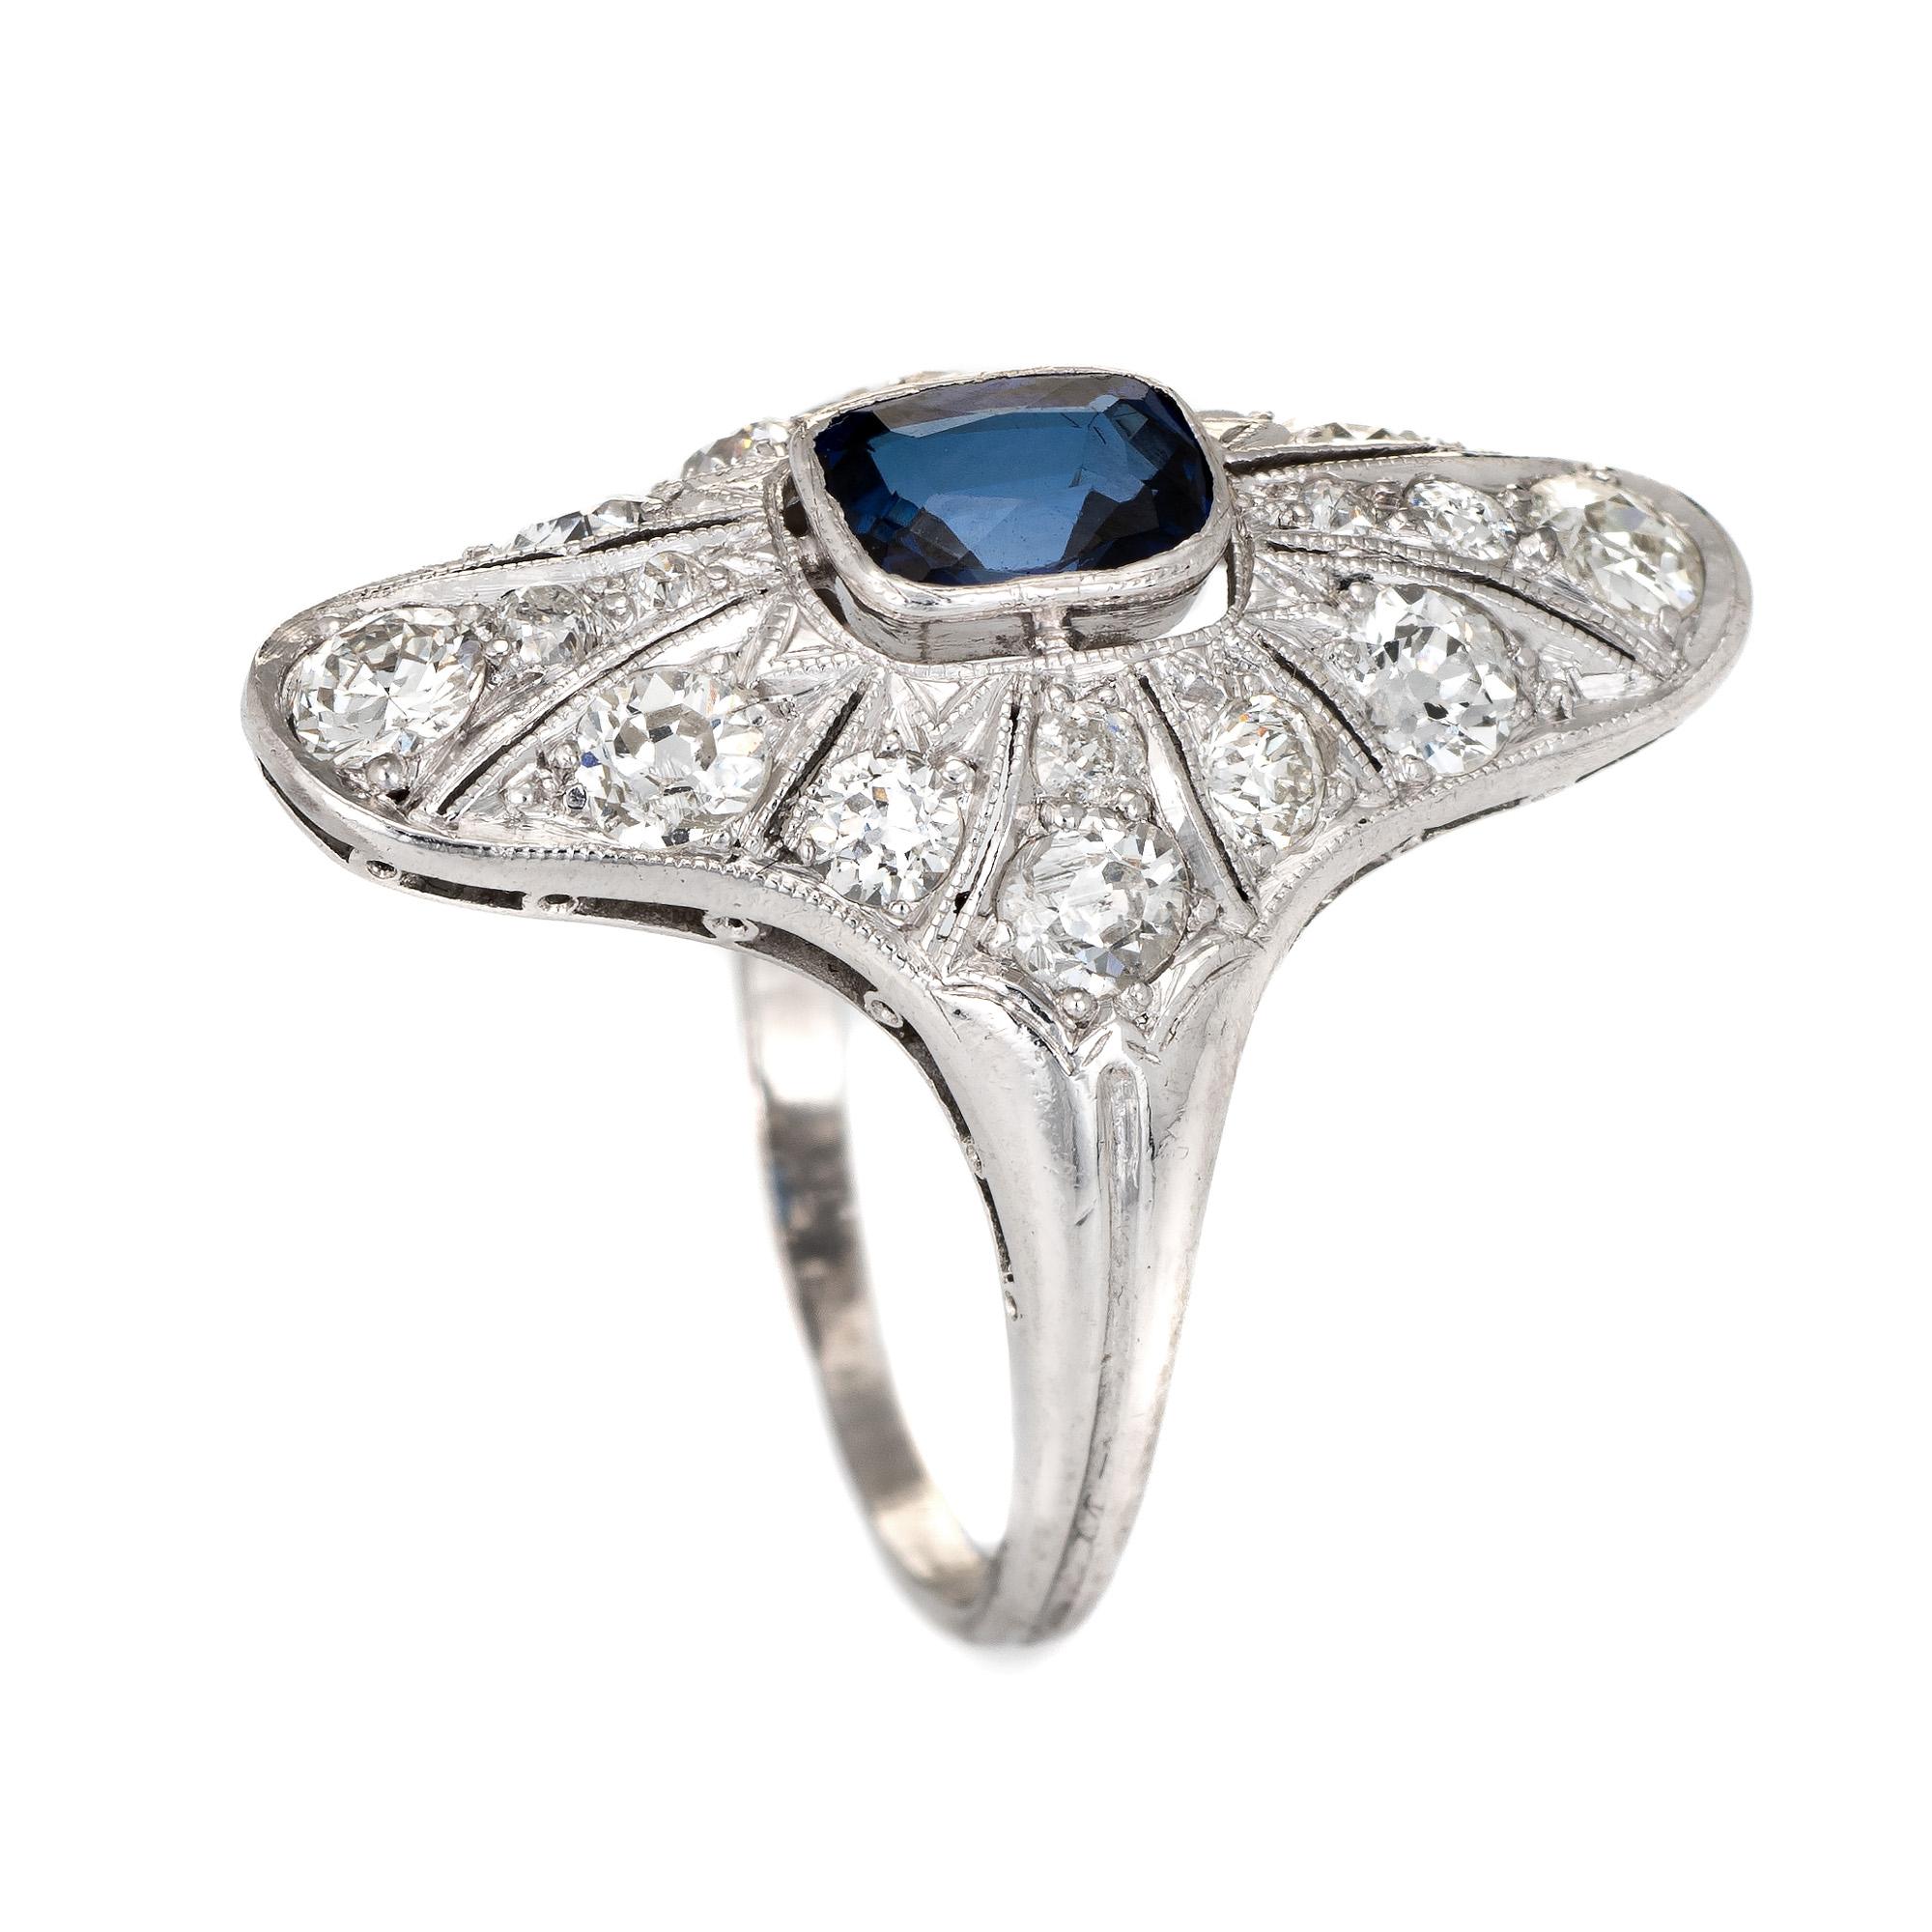 Fein gearbeiteter antiker Ring aus der Edwardianischen Ära (ca. 1910), gefertigt aus 900er Platin. 

Der mittig montierte blaue Saphir mit einem geschätzten Gewicht von 0,50 Karat im Kissenschliff ist mit geschätzten 1,42 Karat Diamanten aus alten